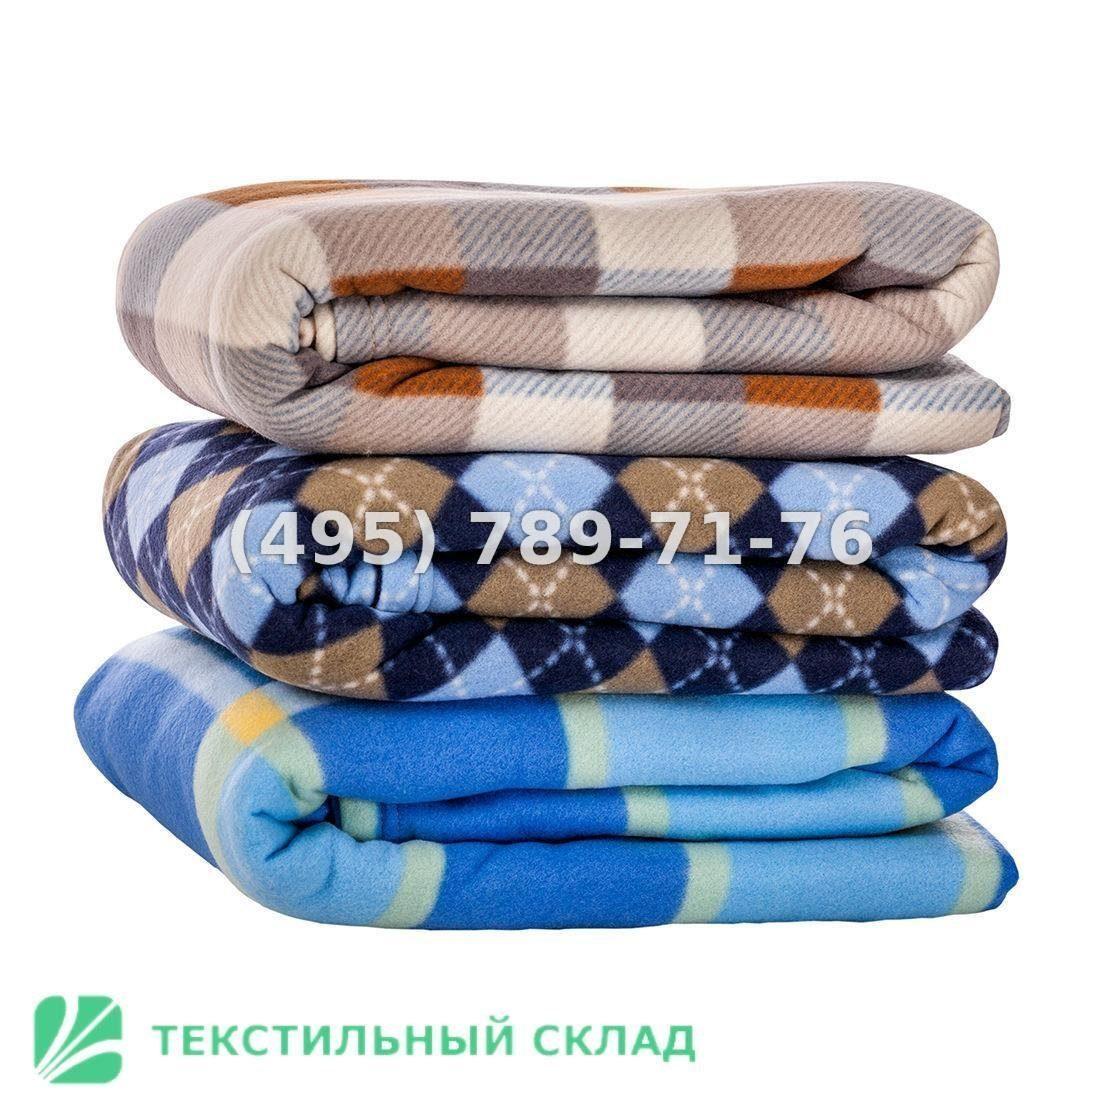 Текстиль для оптовиков и мебель для гостиниц. Москва